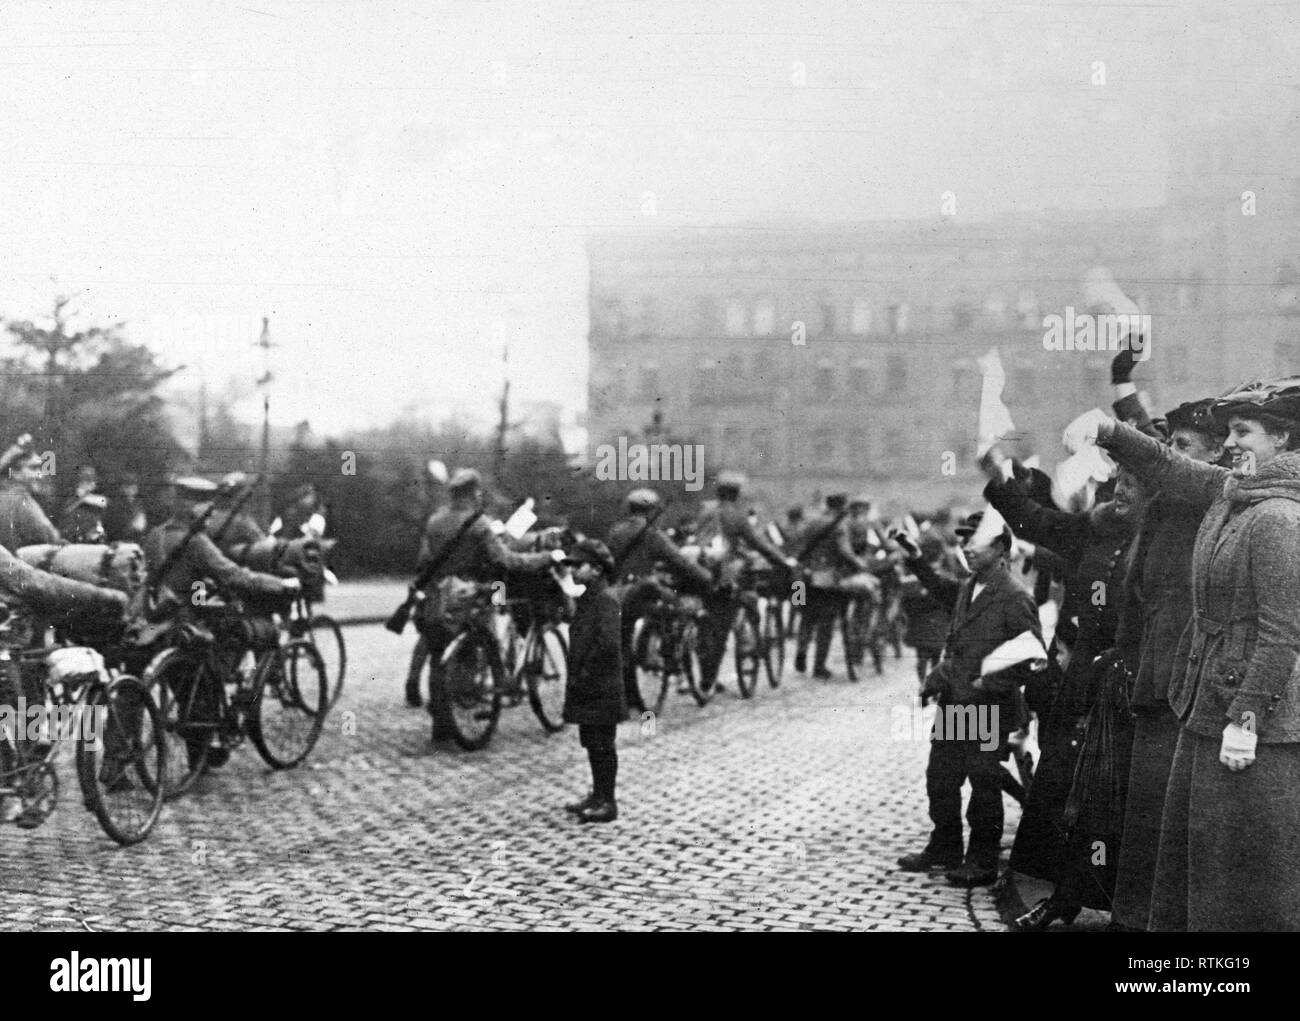 Deutsche Revolution - Regierung Truppen mobilisieren Ebert in Deutschland zu unterstützen. Loslösung der Deutschen Fahrrad corps marschieren durch die Straßen von Köln nach der Mobilisierung der Regierung Ebert zu erleichtern kann. 1918-1919 Stockfoto